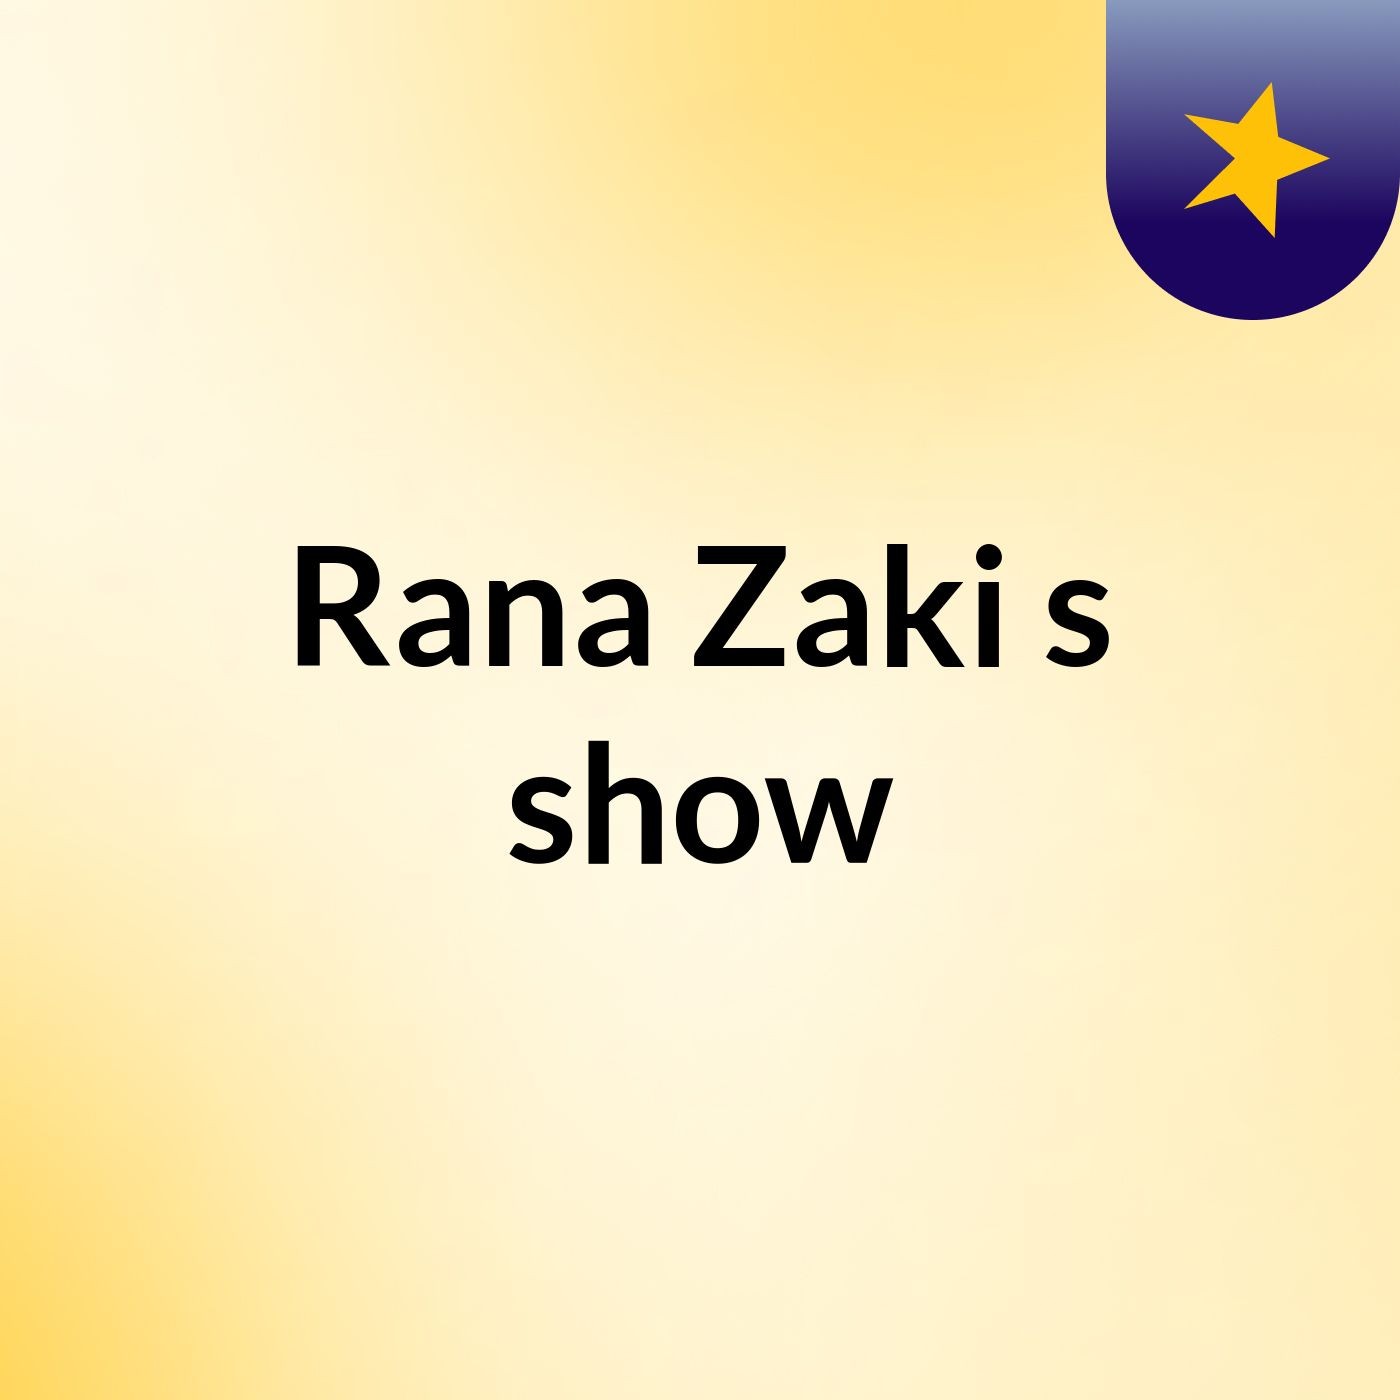 Rana Zaki's show